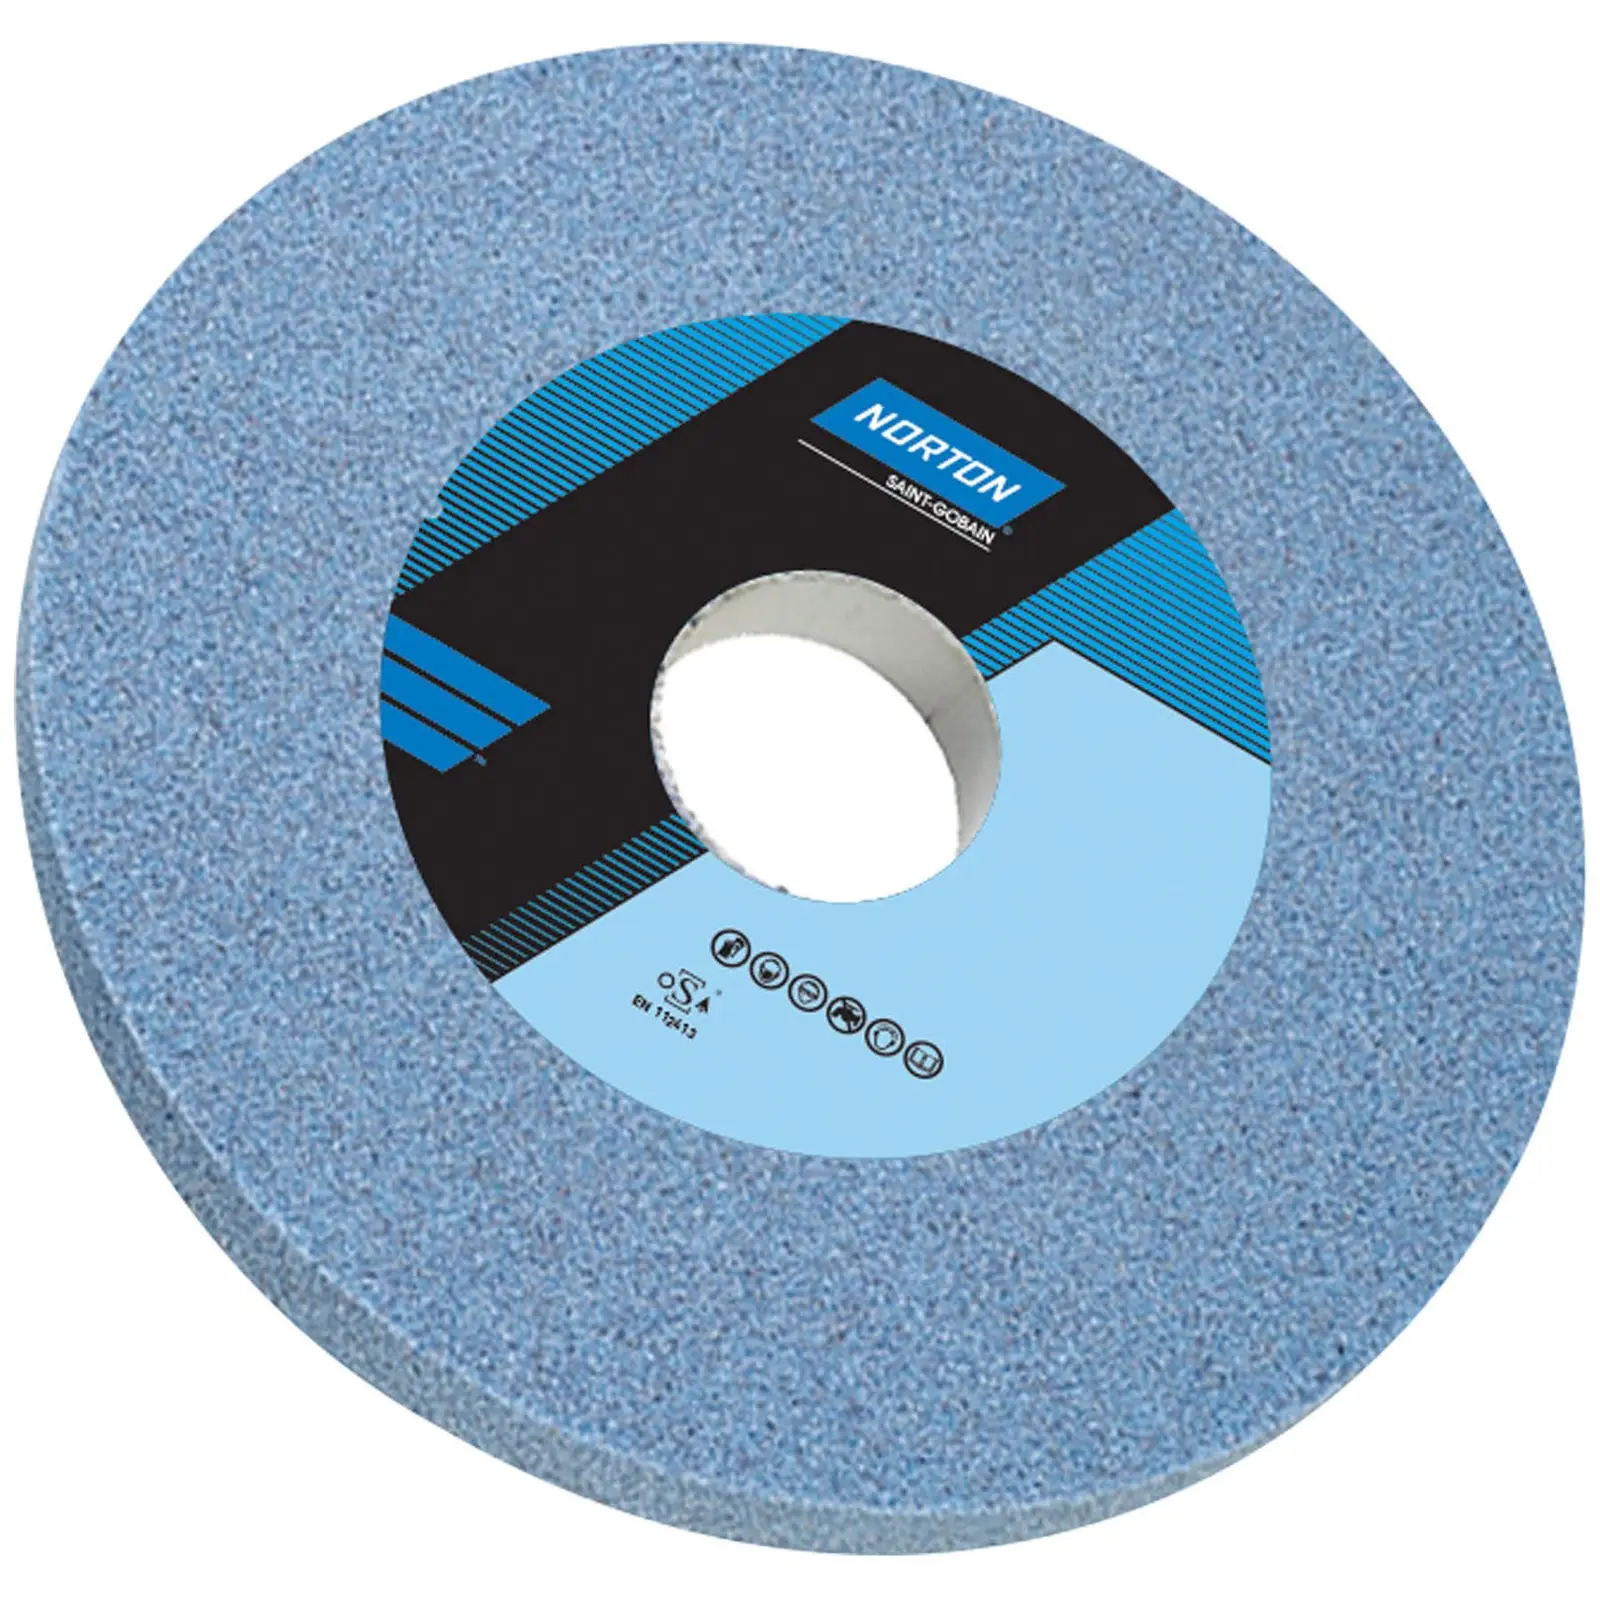 Disco para amoladora - Ø 200 mm - grano: 60 - grado de dureza: K - óxido de aluminio (cerámico) - 5 unidades